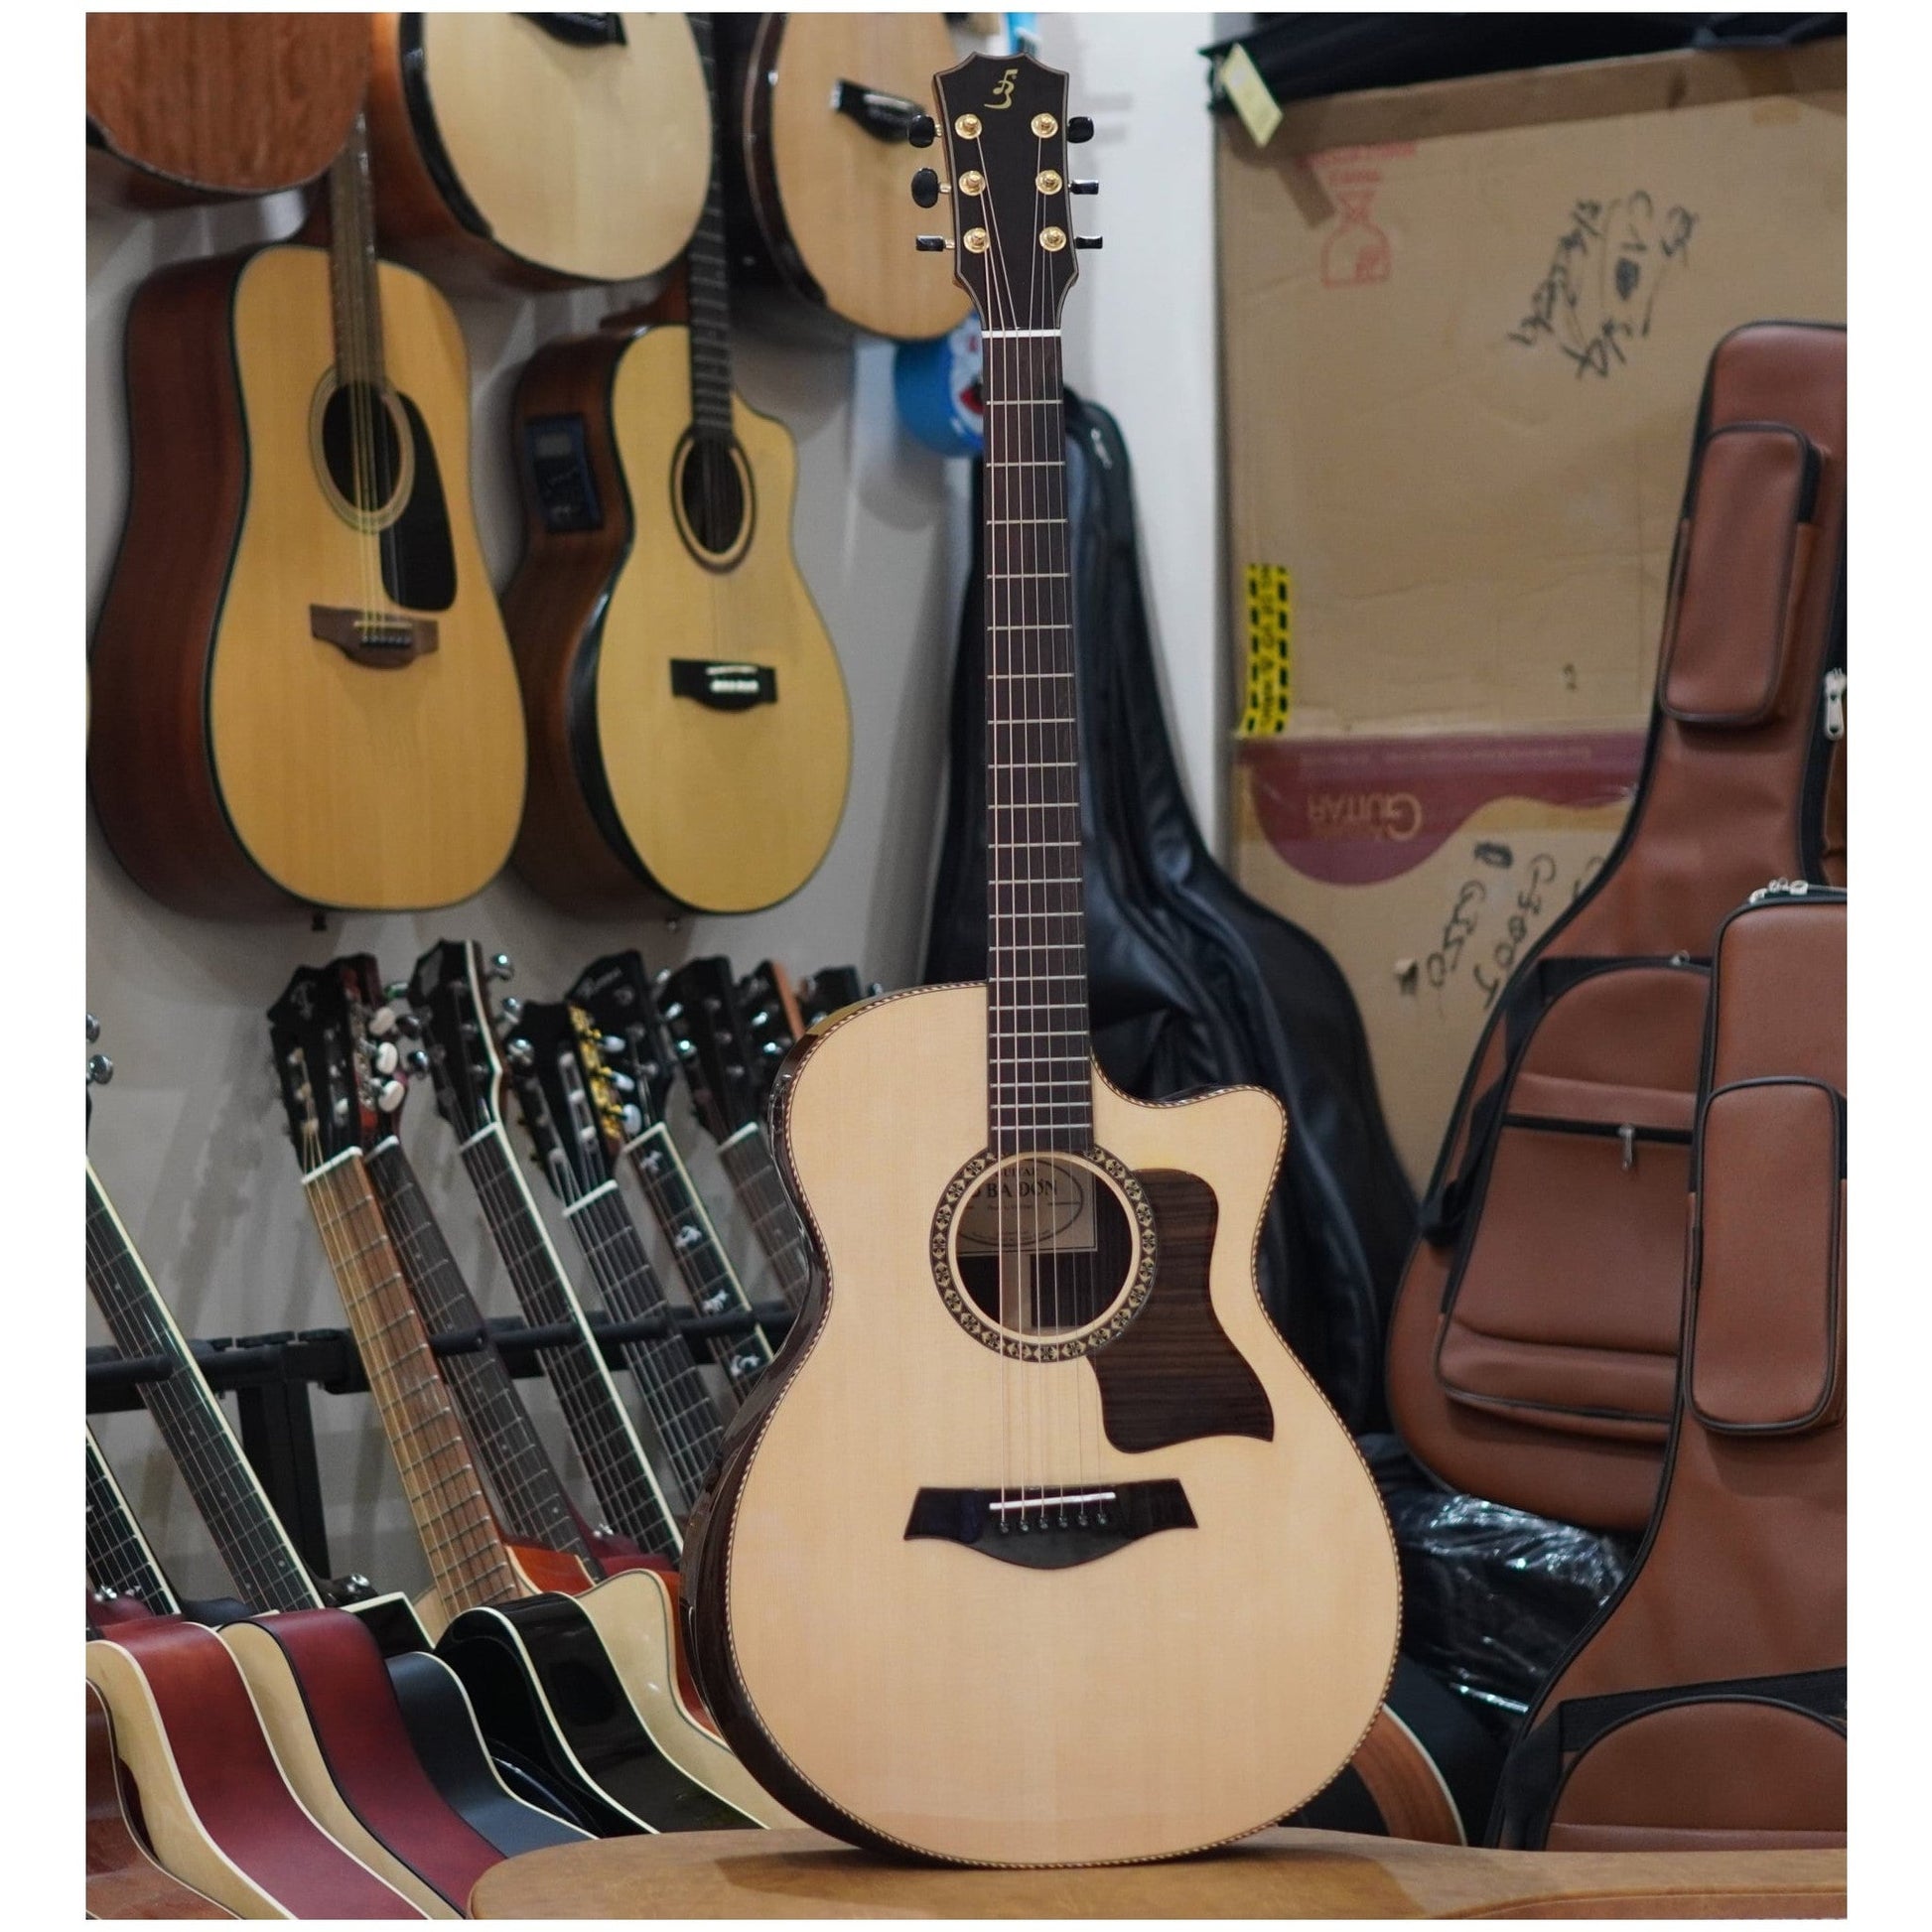 Đàn Guitar Ba Đờn T1500 Acoustic - Việt Music